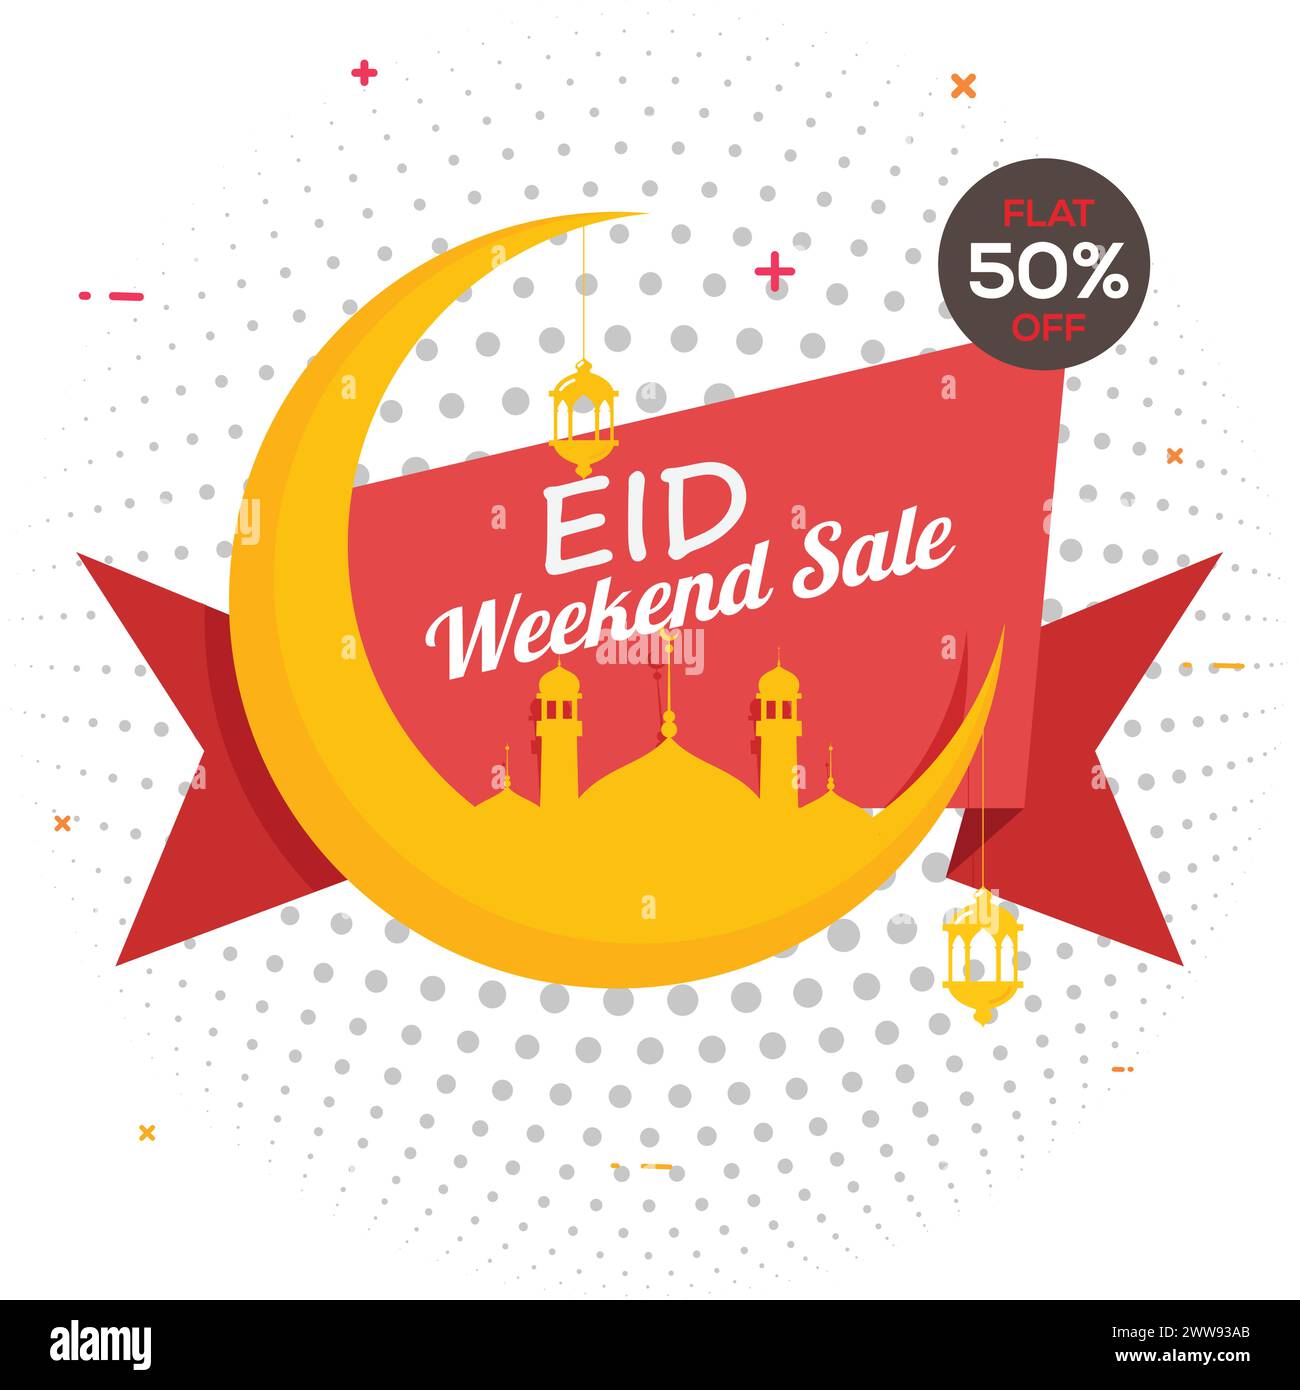 Offerta speciale EID Weekend Design del nastro, grande luna crescente creativa con moschea e lampade per Eid. Fino al 50% di sconto. Illustrazione Vettoriale